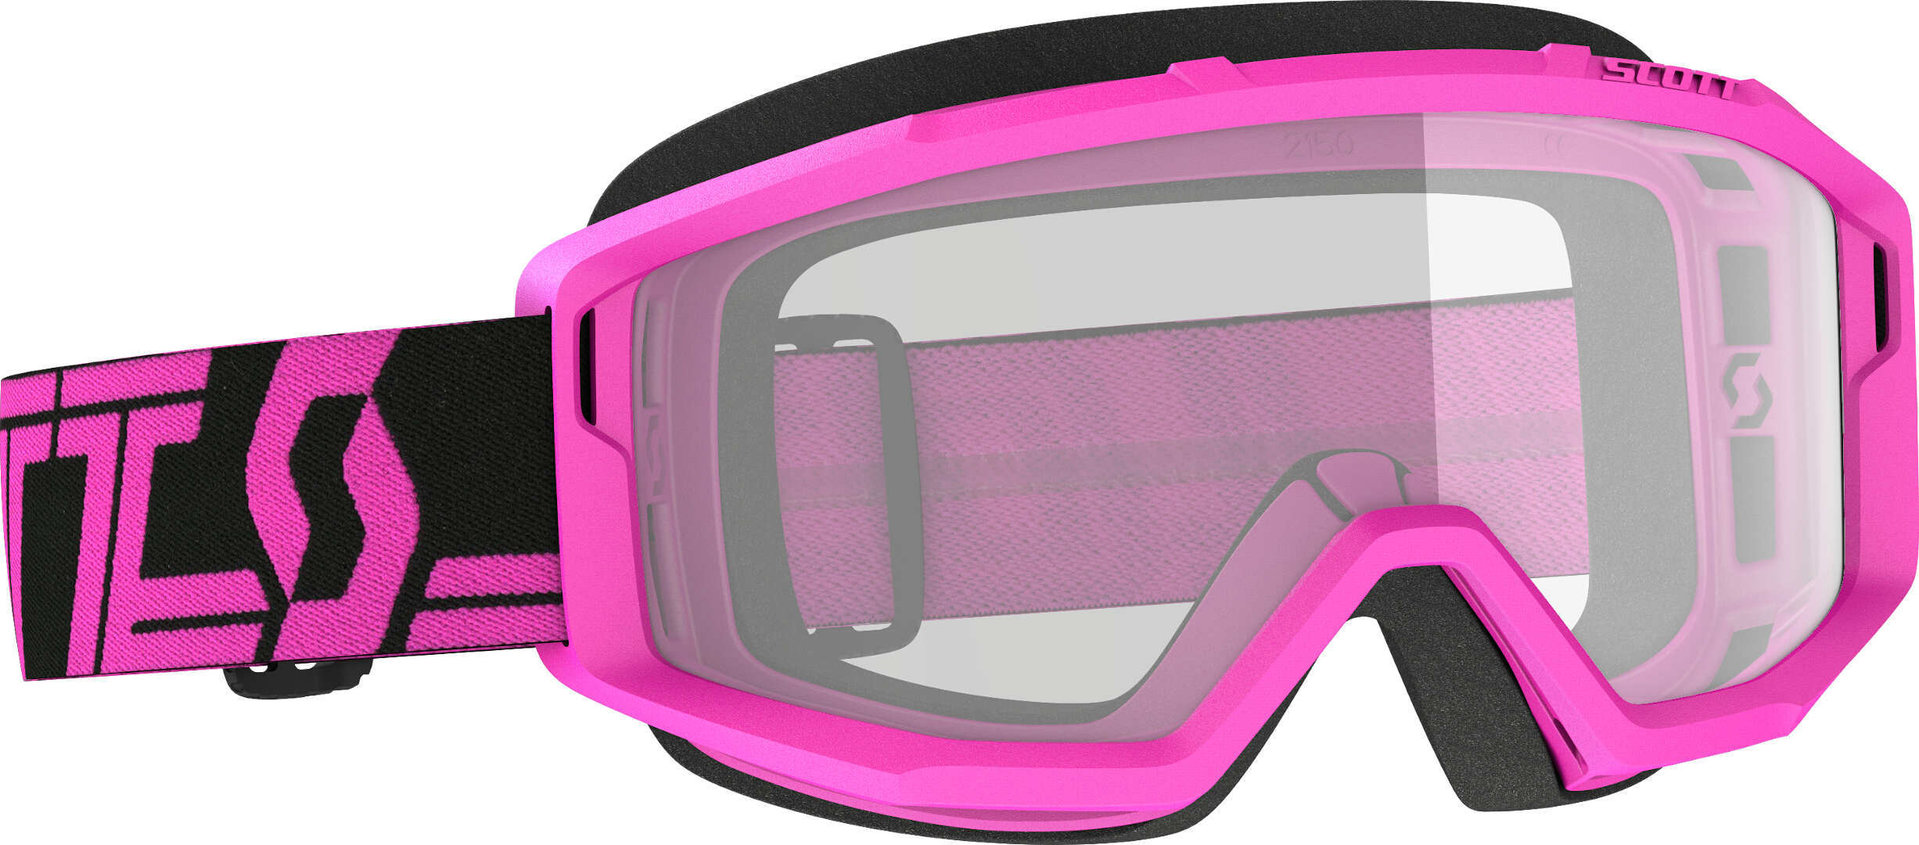 Scott Primal Clear schwarz/pink Motocross Brille, pink